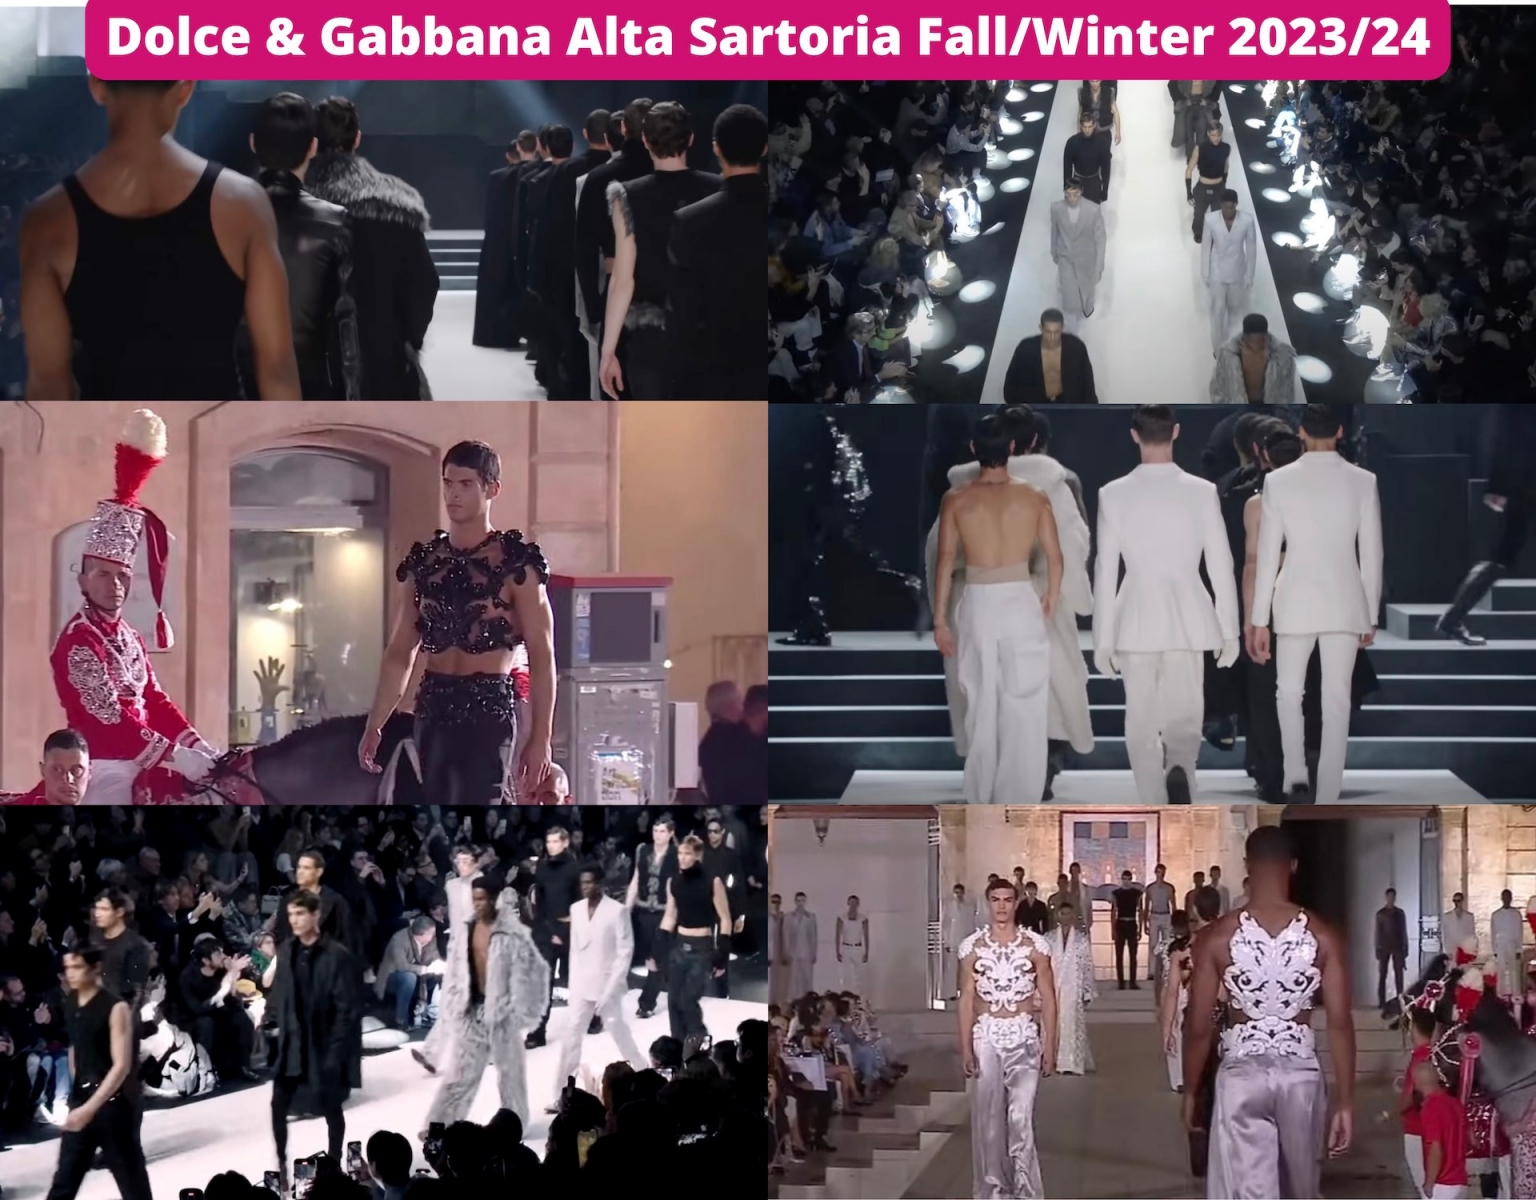 Dolce & Gabbana Alta Sartoria Fall/Winter 2023/34